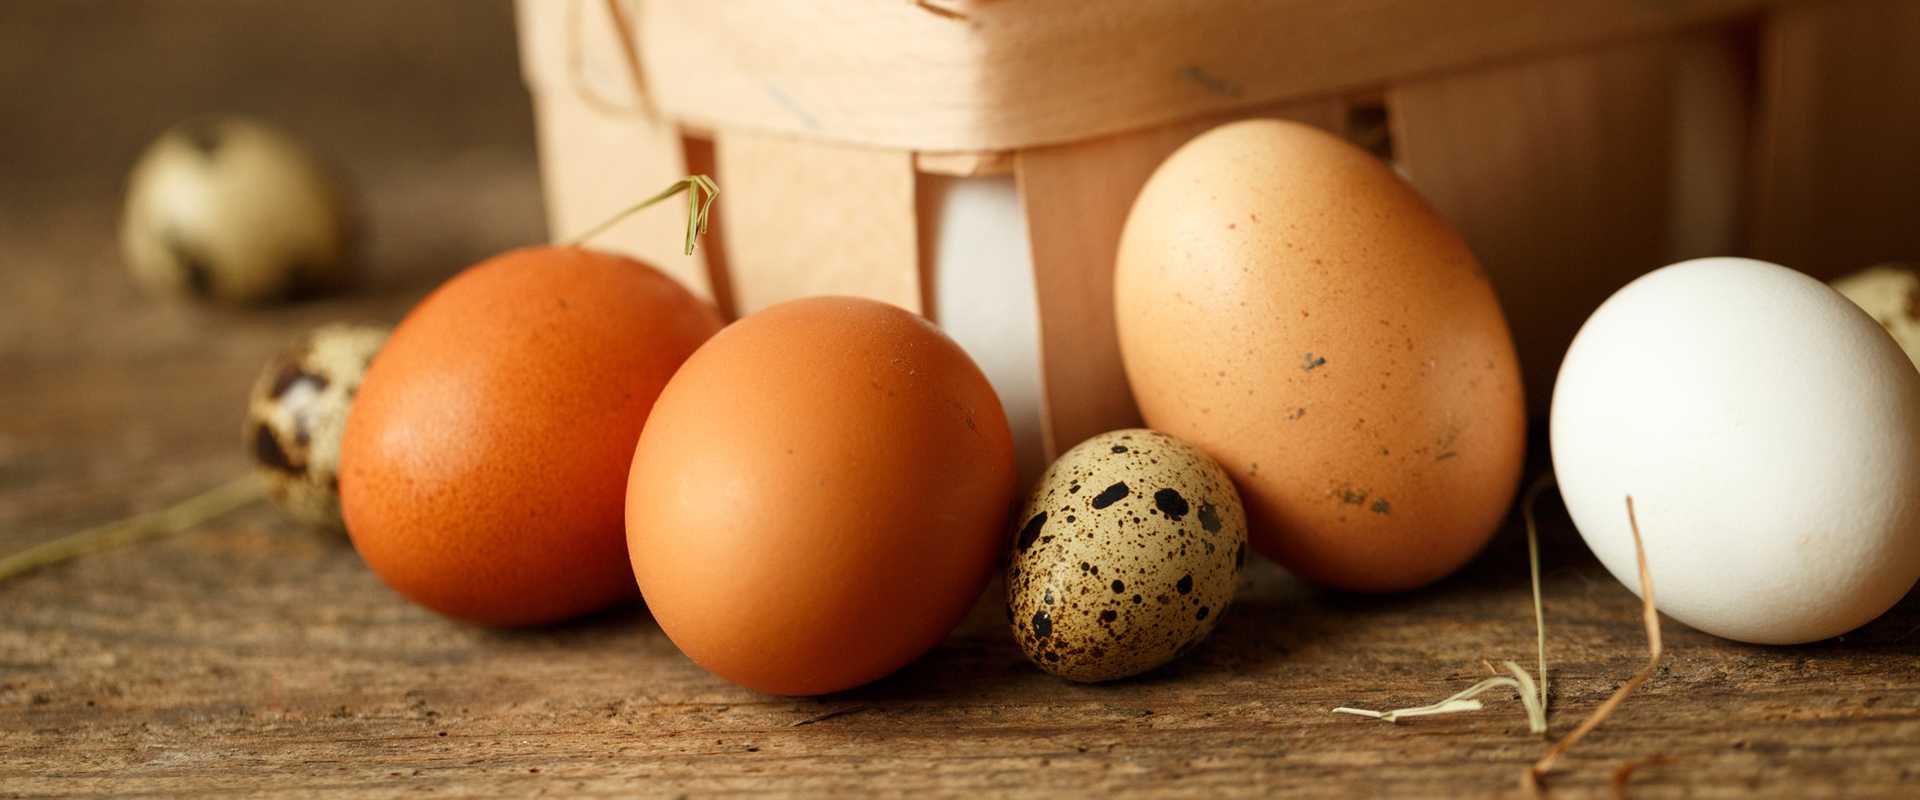 К чему снятся женщине куриные яйца: белые, свежие, тухлые, вареные, в гнезде, курятнике, на столе, собирать, покупать, есть, разбить